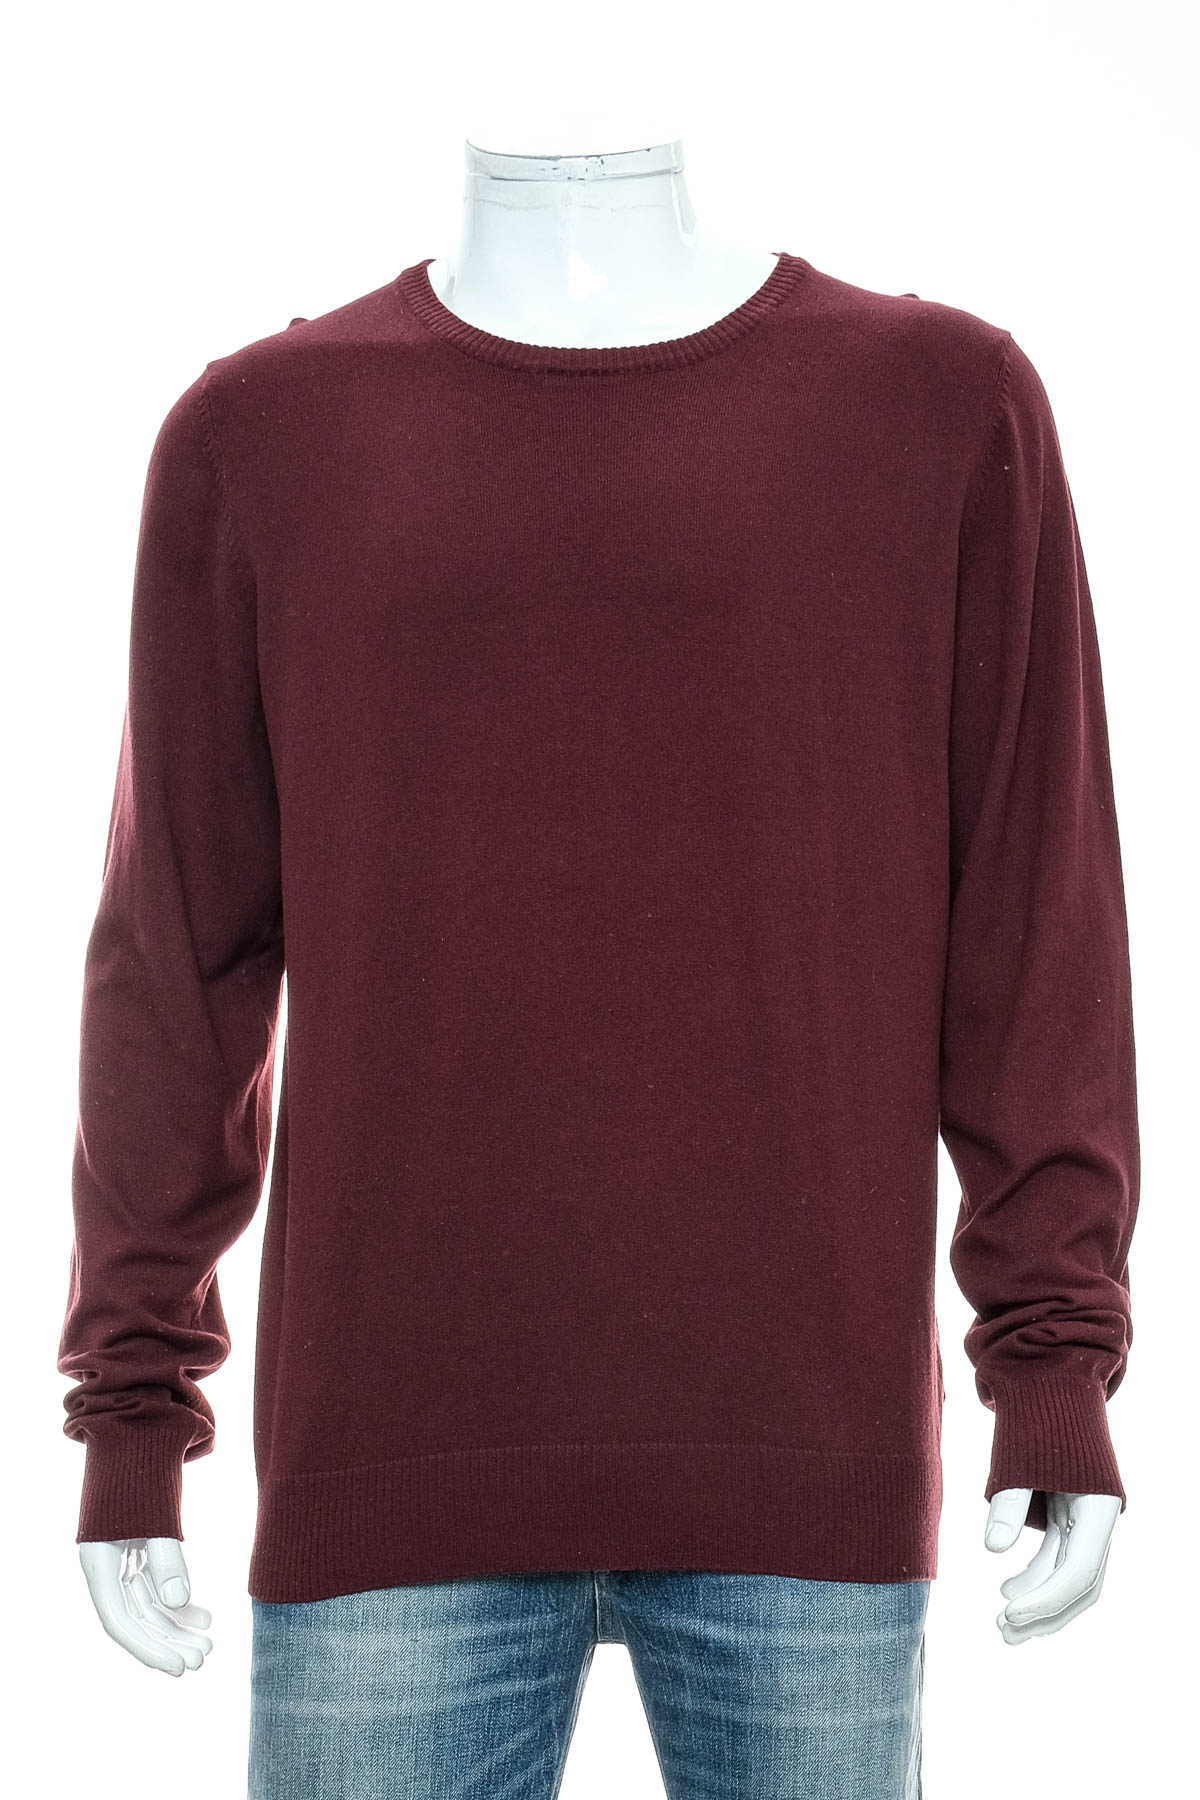 Men's sweater - Collezione - 0